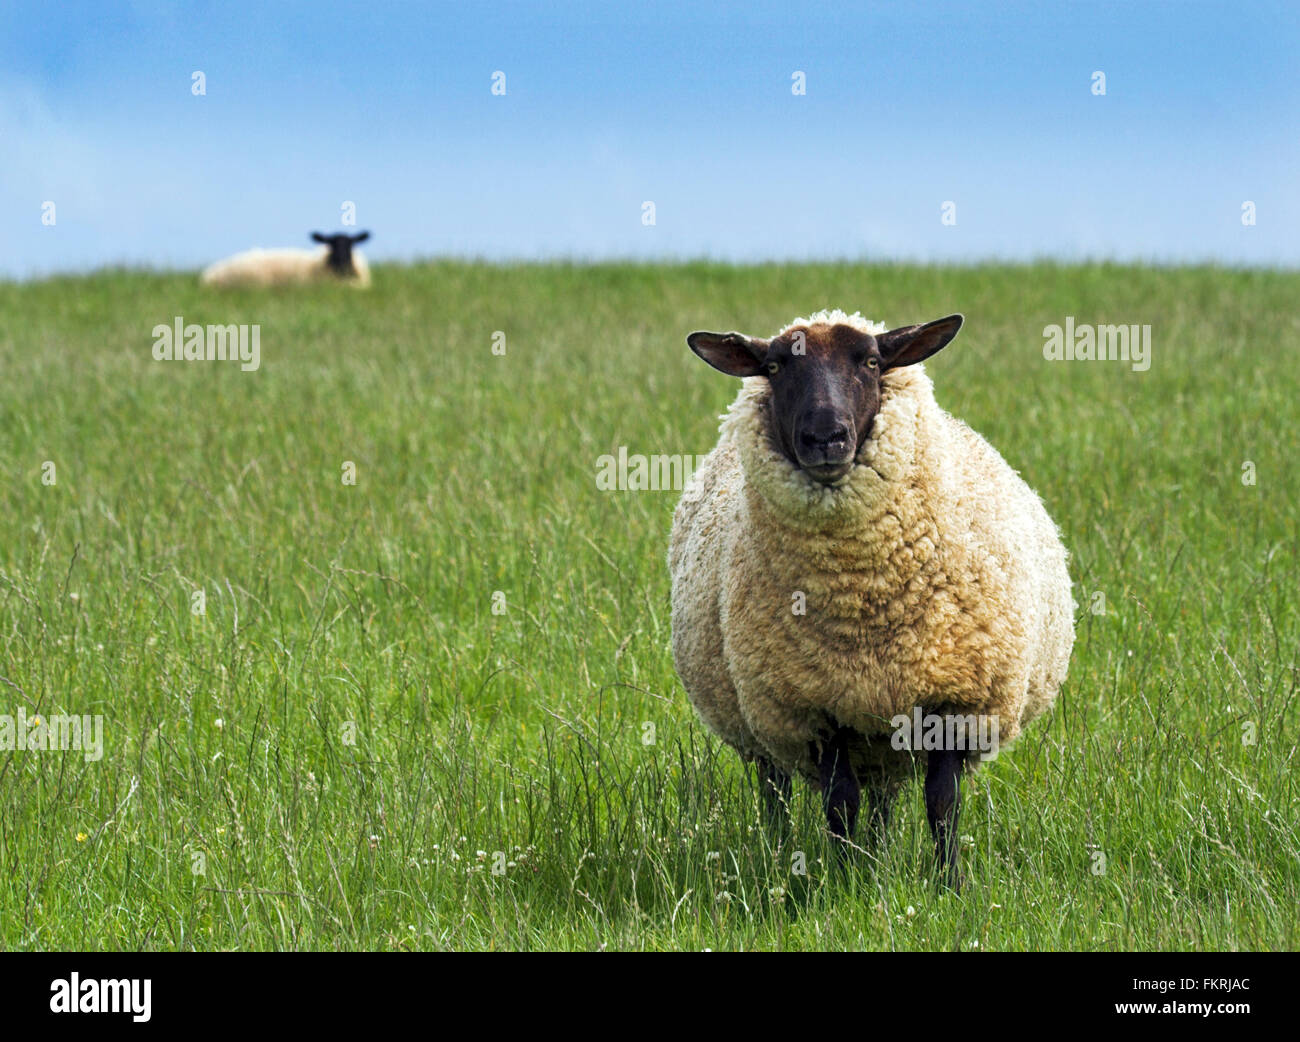 Suffolk schwarz konfrontiert Schafe auffällig Bild mit einfachen Vordergrund Schafe auf Gras zweite Schafe am Horizont auf Drittel in der Entfernung Raum für Kopie oder Text. Stockfoto